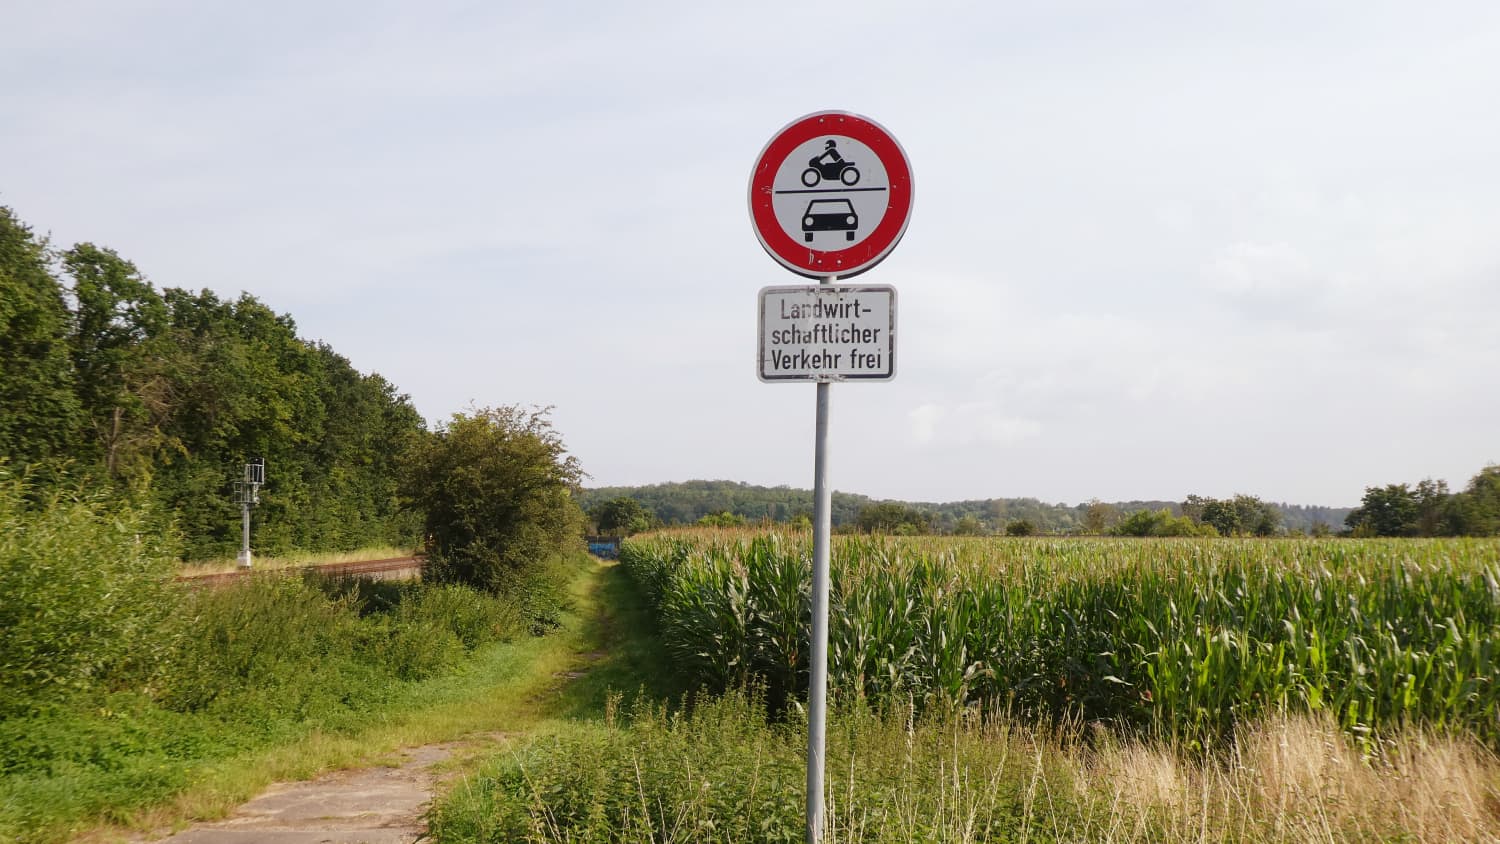 Durchfahrt verboten – Land- und forstwirtschaftlicher Verkehr frei – Stadt  St. Goar